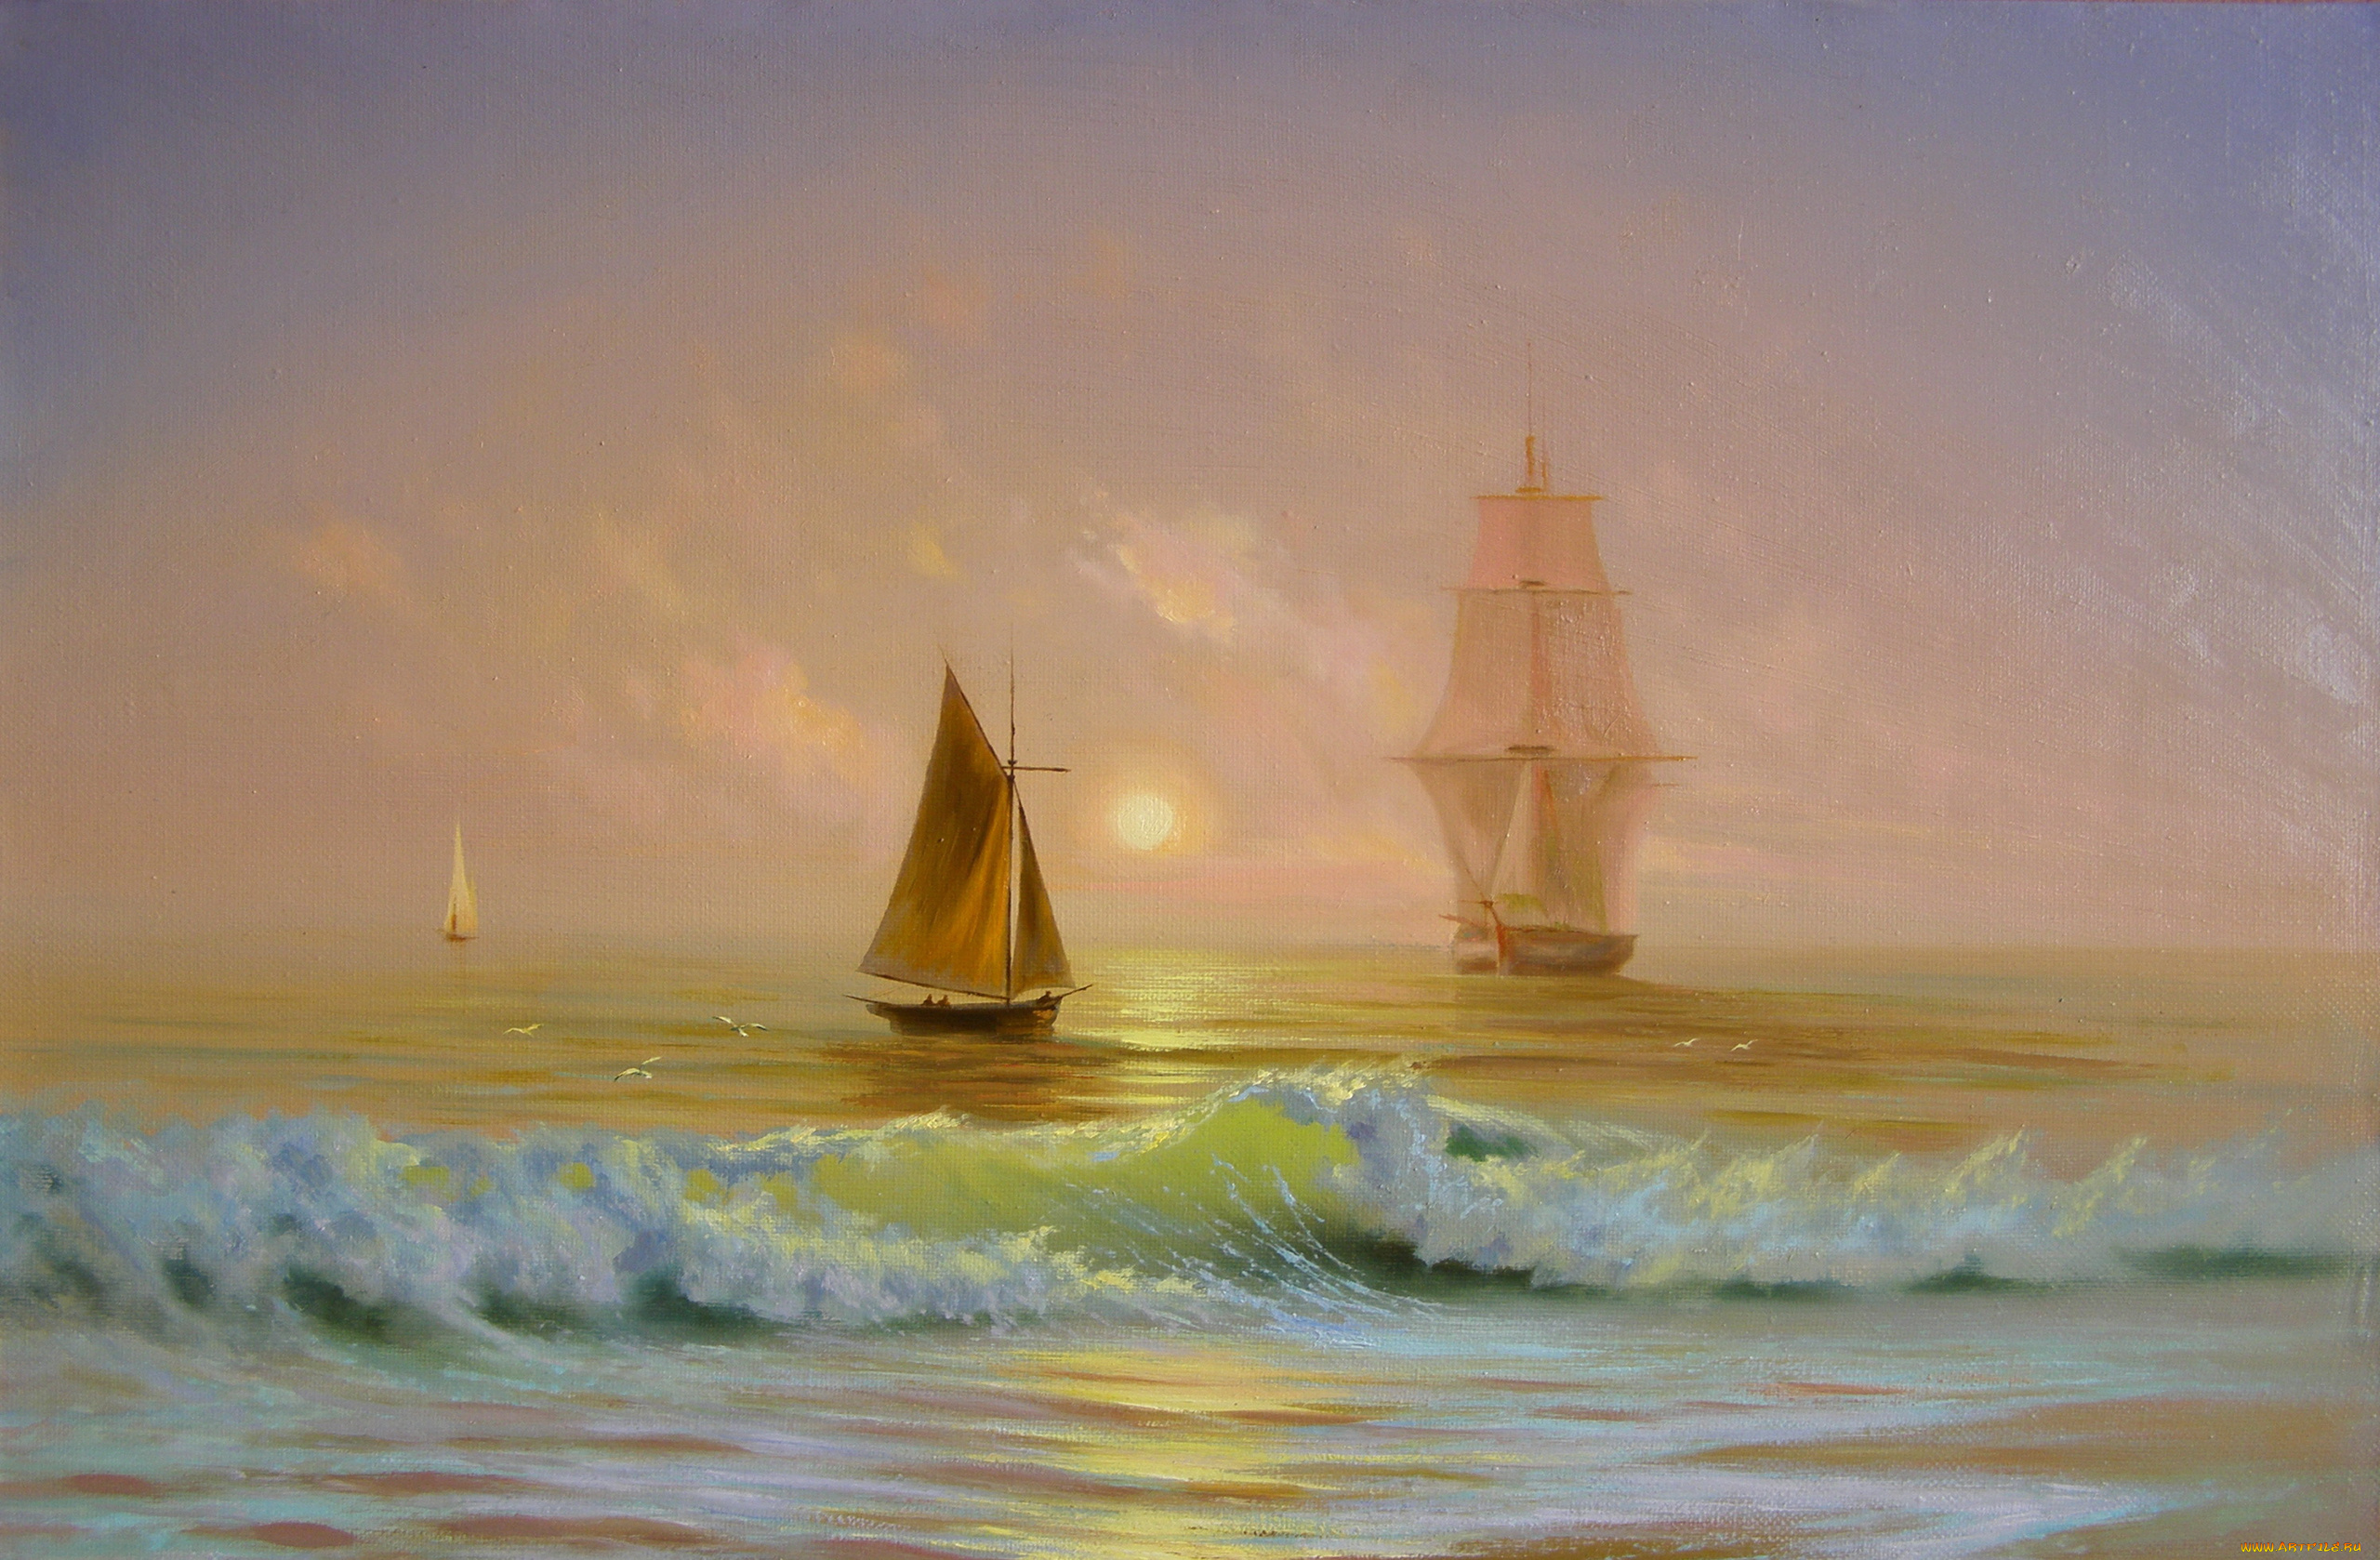 корабли, рисованные, море, волны, небо, солнце, лодки, яхты, парусники, чайки